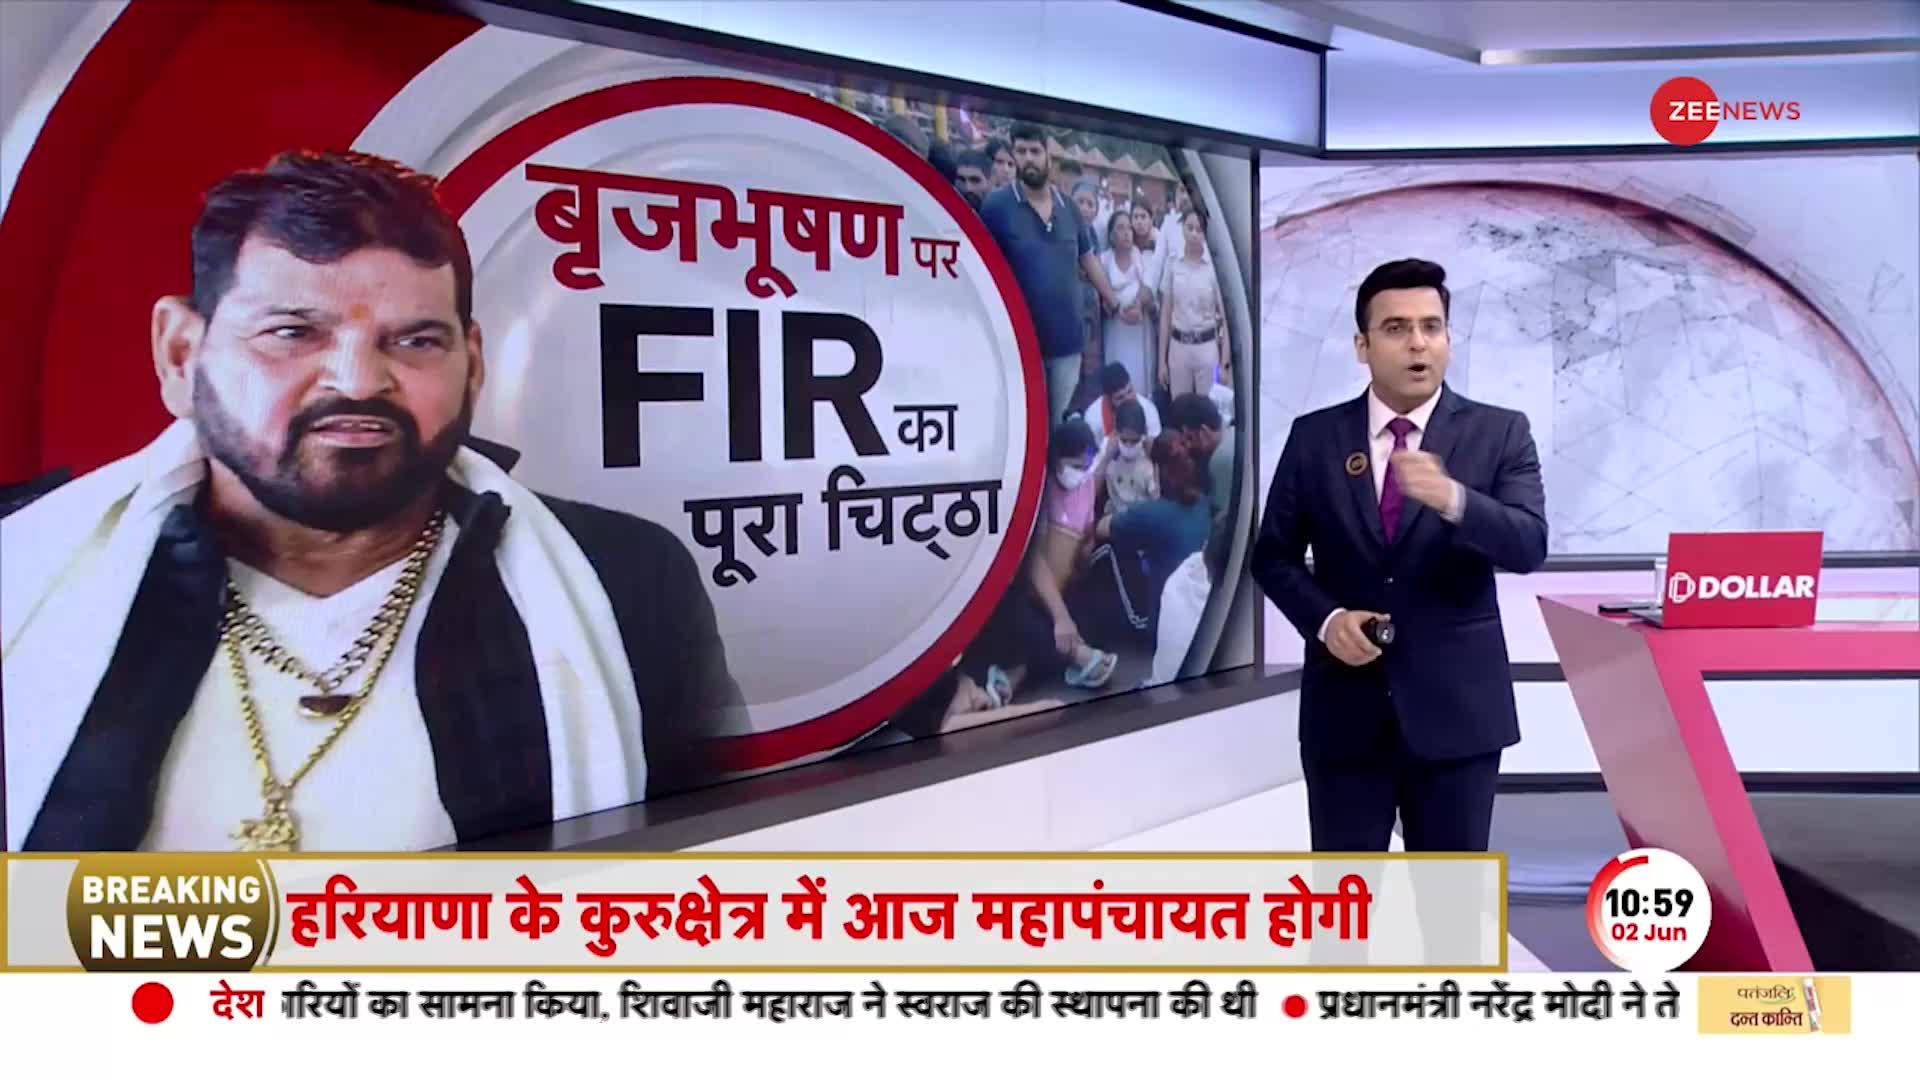 Brijbhushan FIR: सांस की जांच के बहाने बृजभूषण सिंह से छुए छाती और पेट, FIR में लगे संगीन आरोप